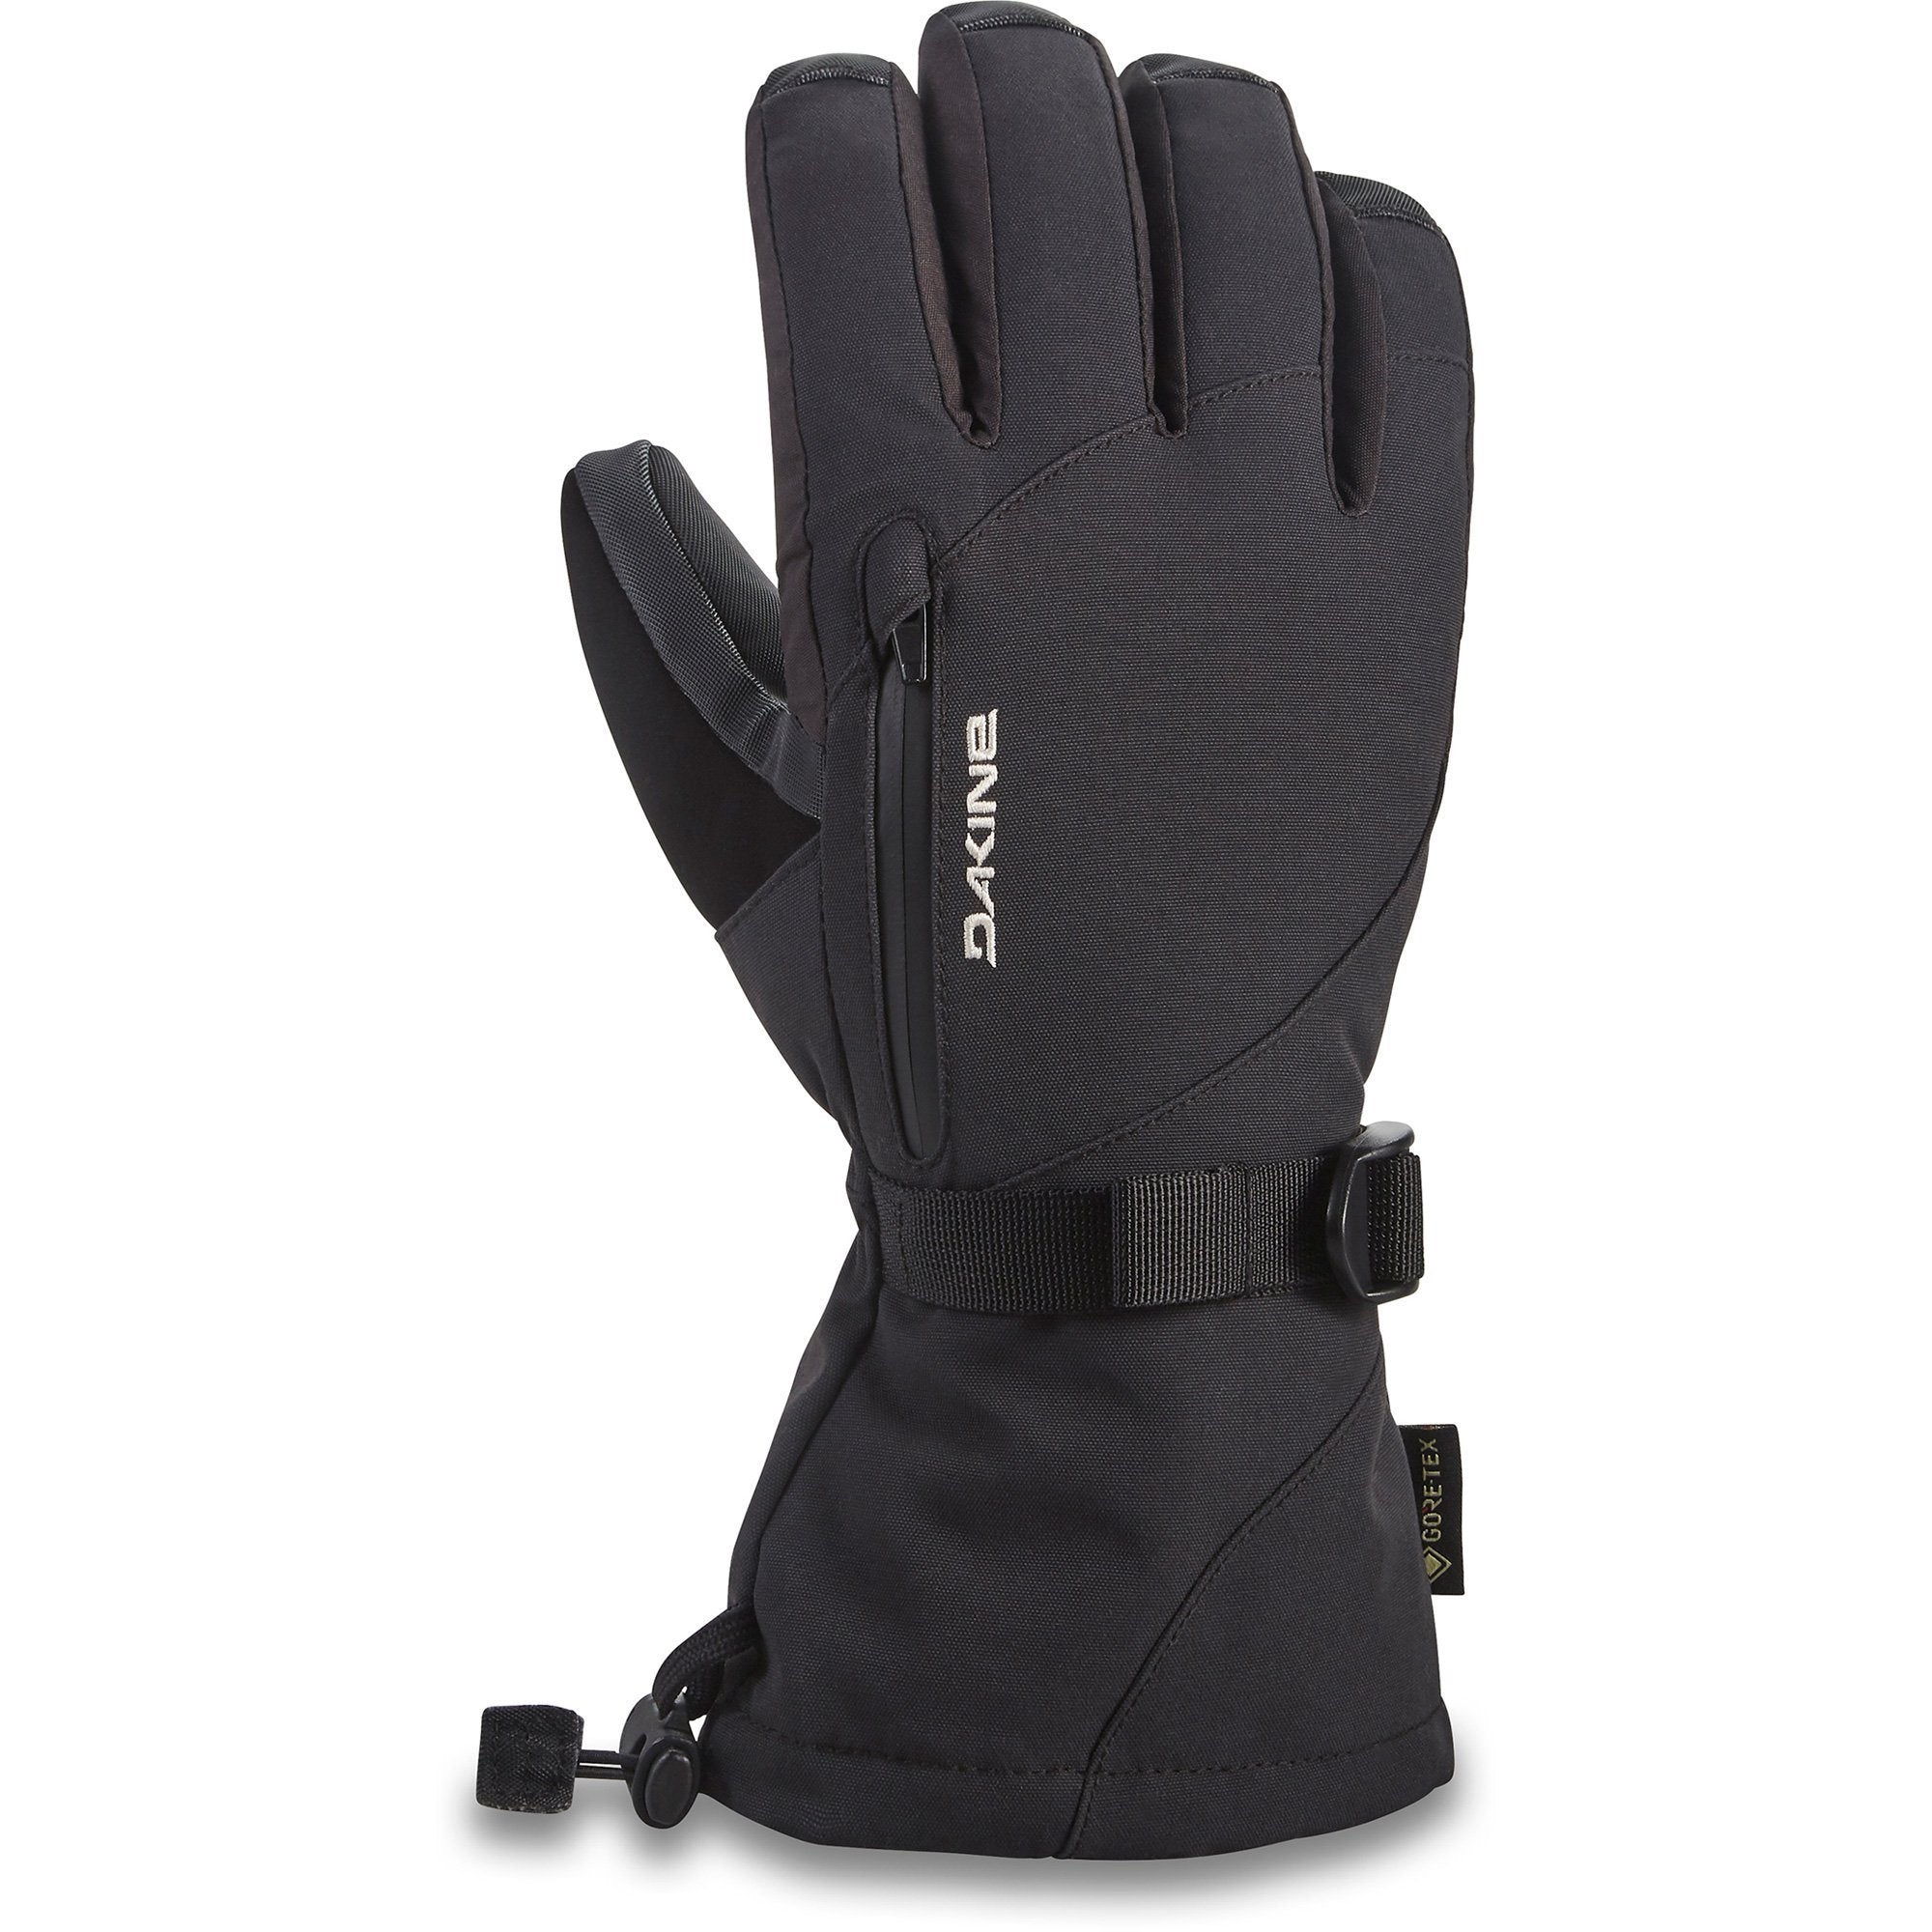 DAKINE Sequoia GORE-TEX Glove Women's Black Women's Snow Gloves Dakine XS 